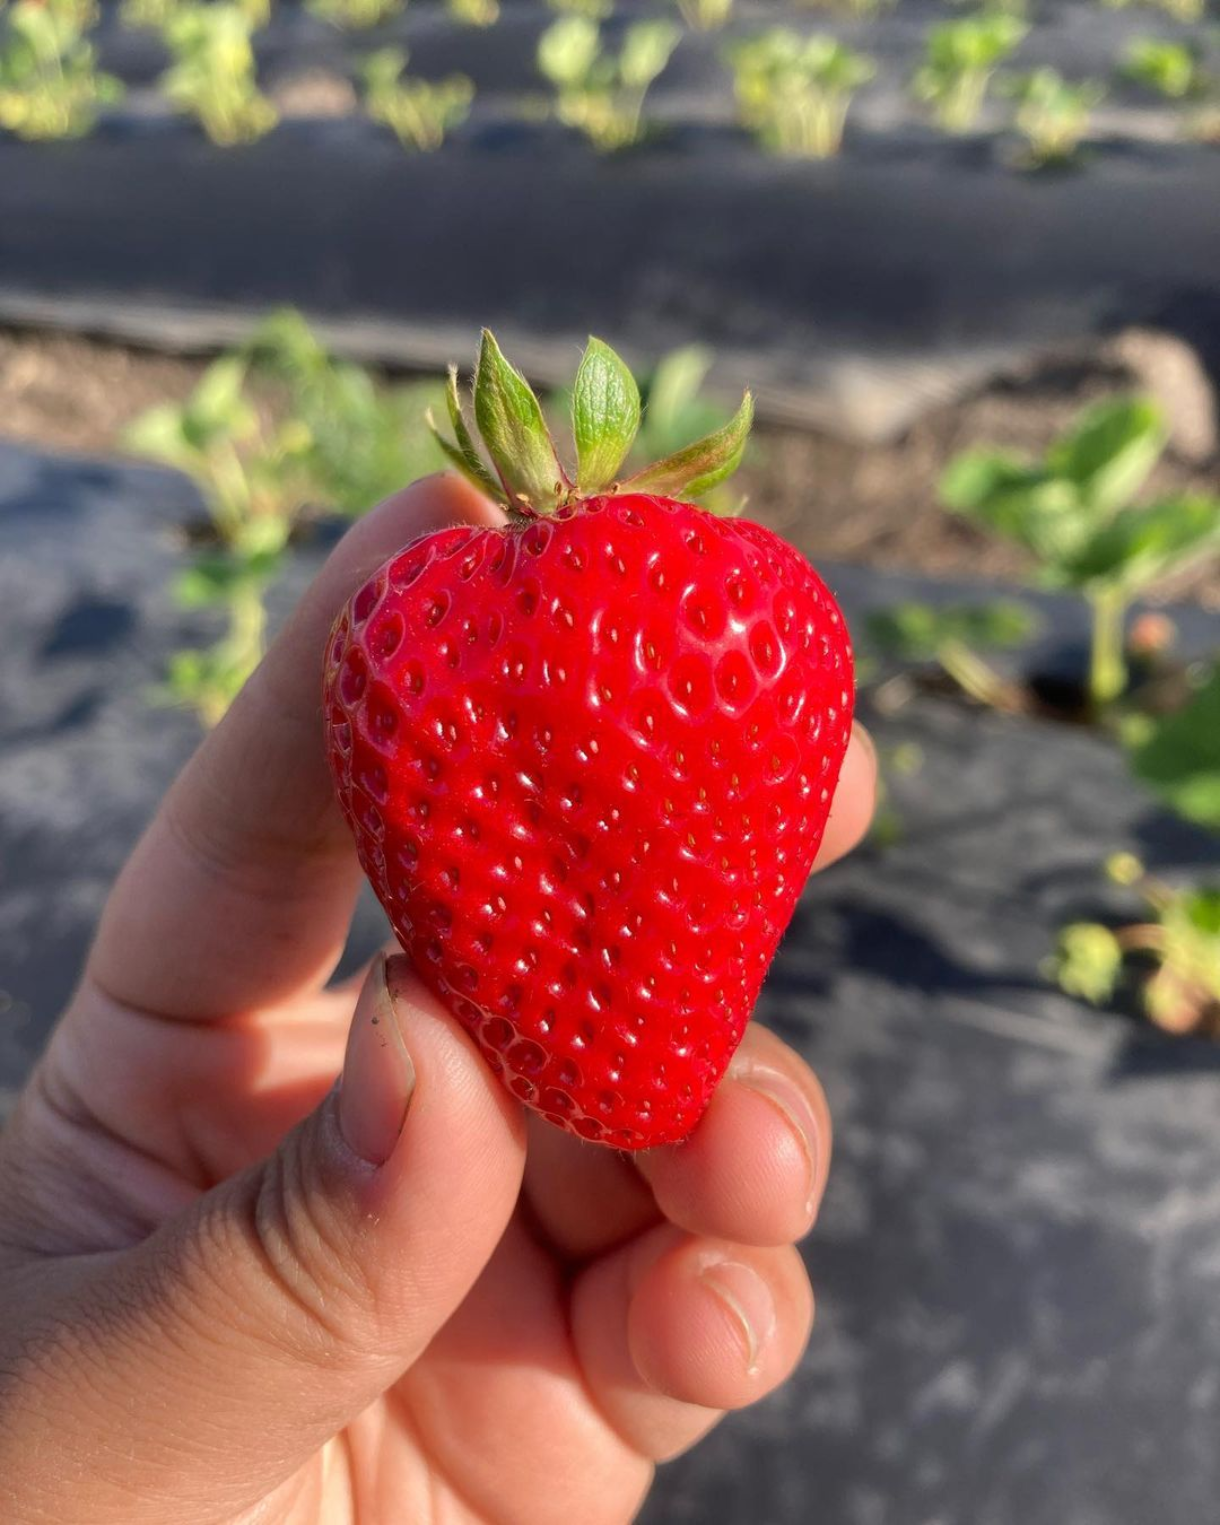 Chao Santana Strawberry Farm